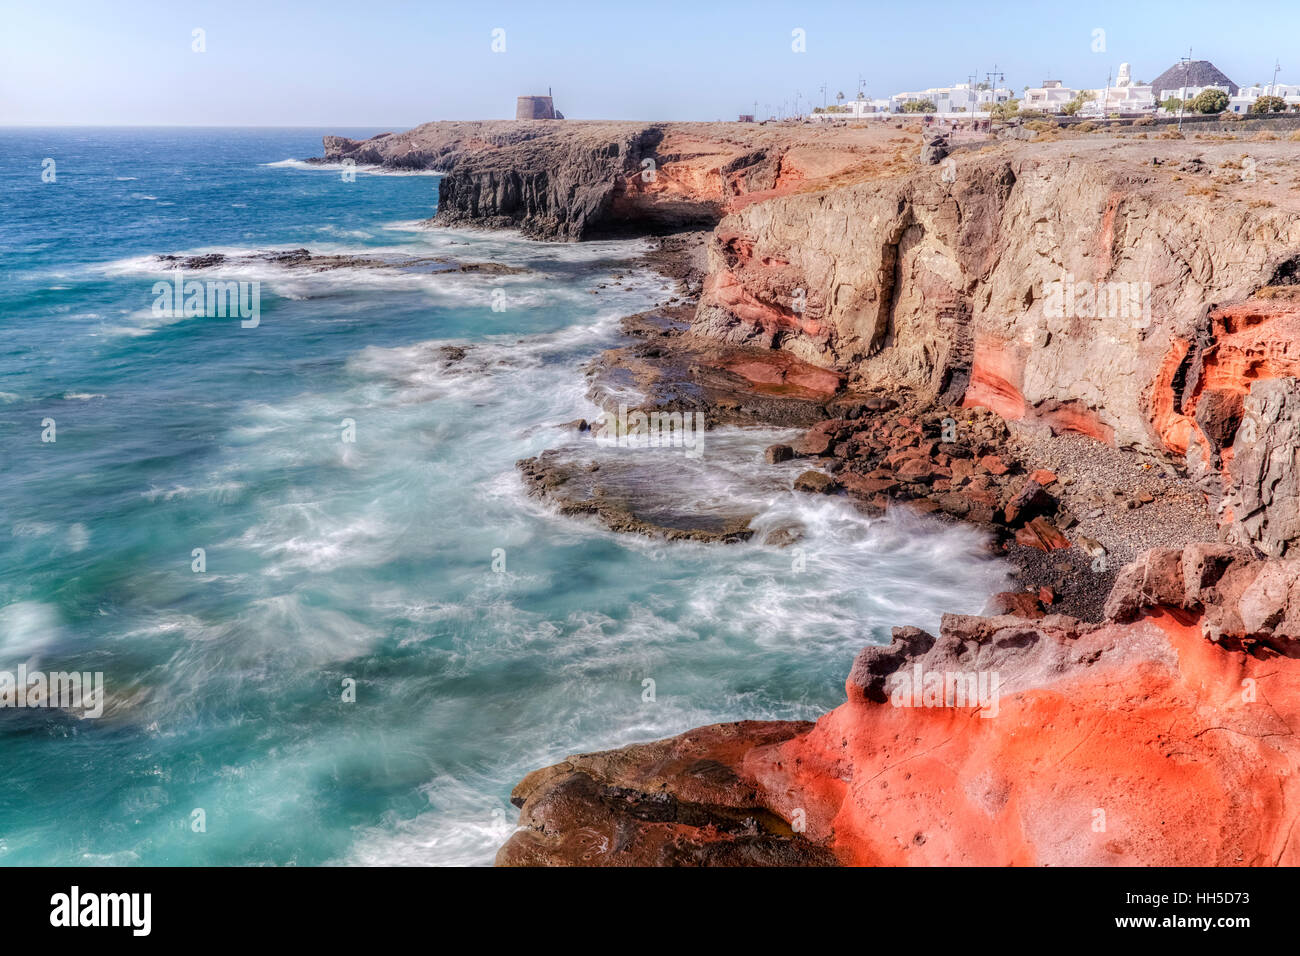 Castillo de las Coloradas, Playa Blanca, Lanzarote, Canary Islands, Spain Stock Photo